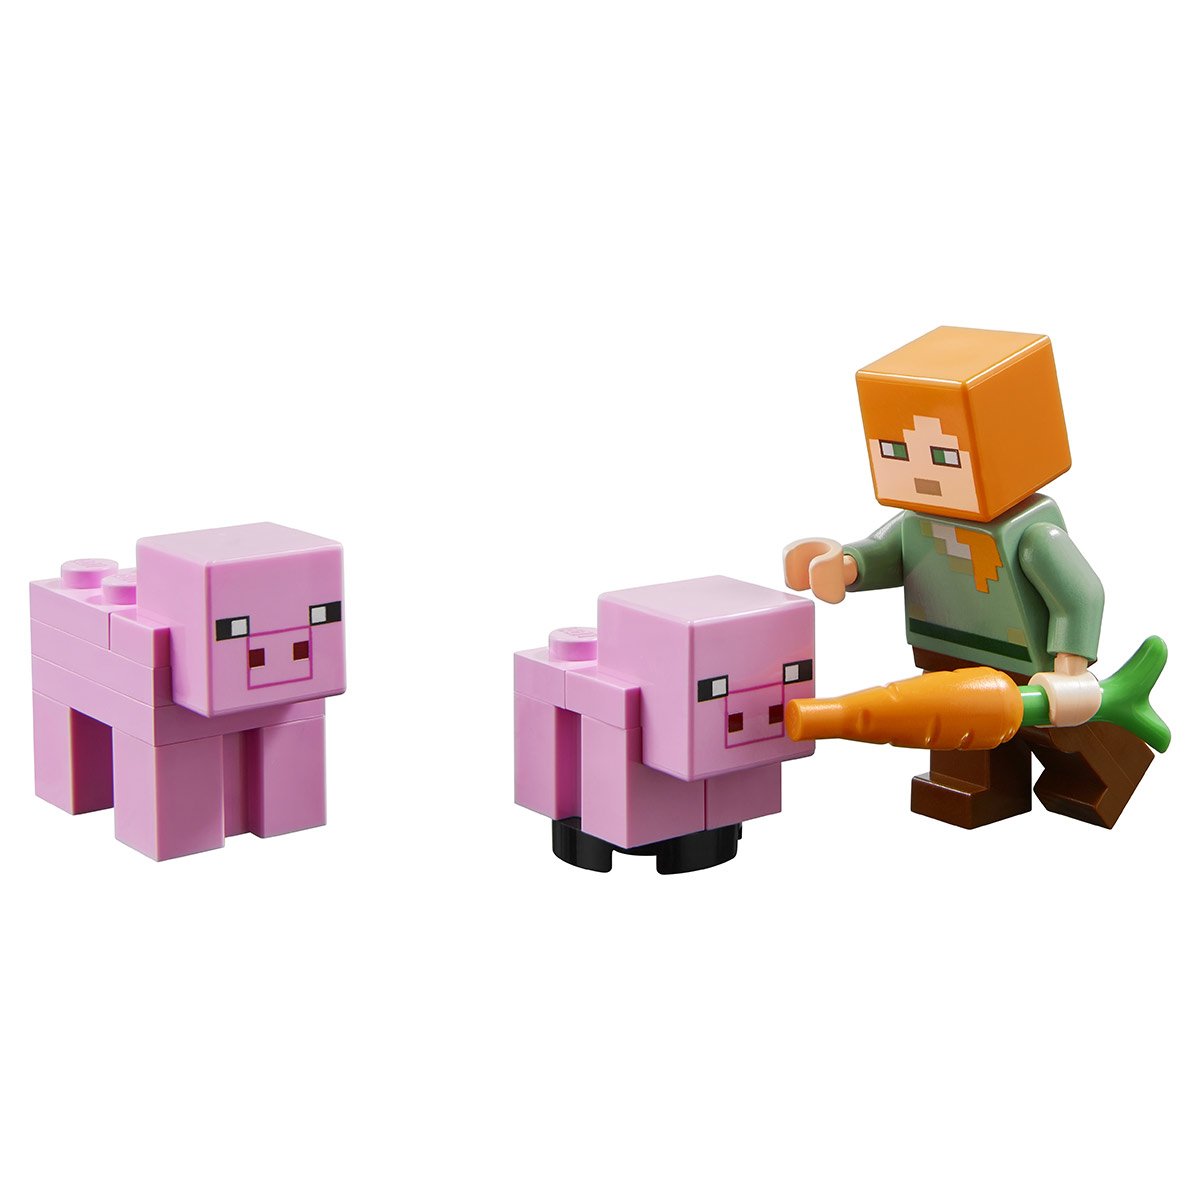 Jeux de construction La maison cochon Lego Minecraft